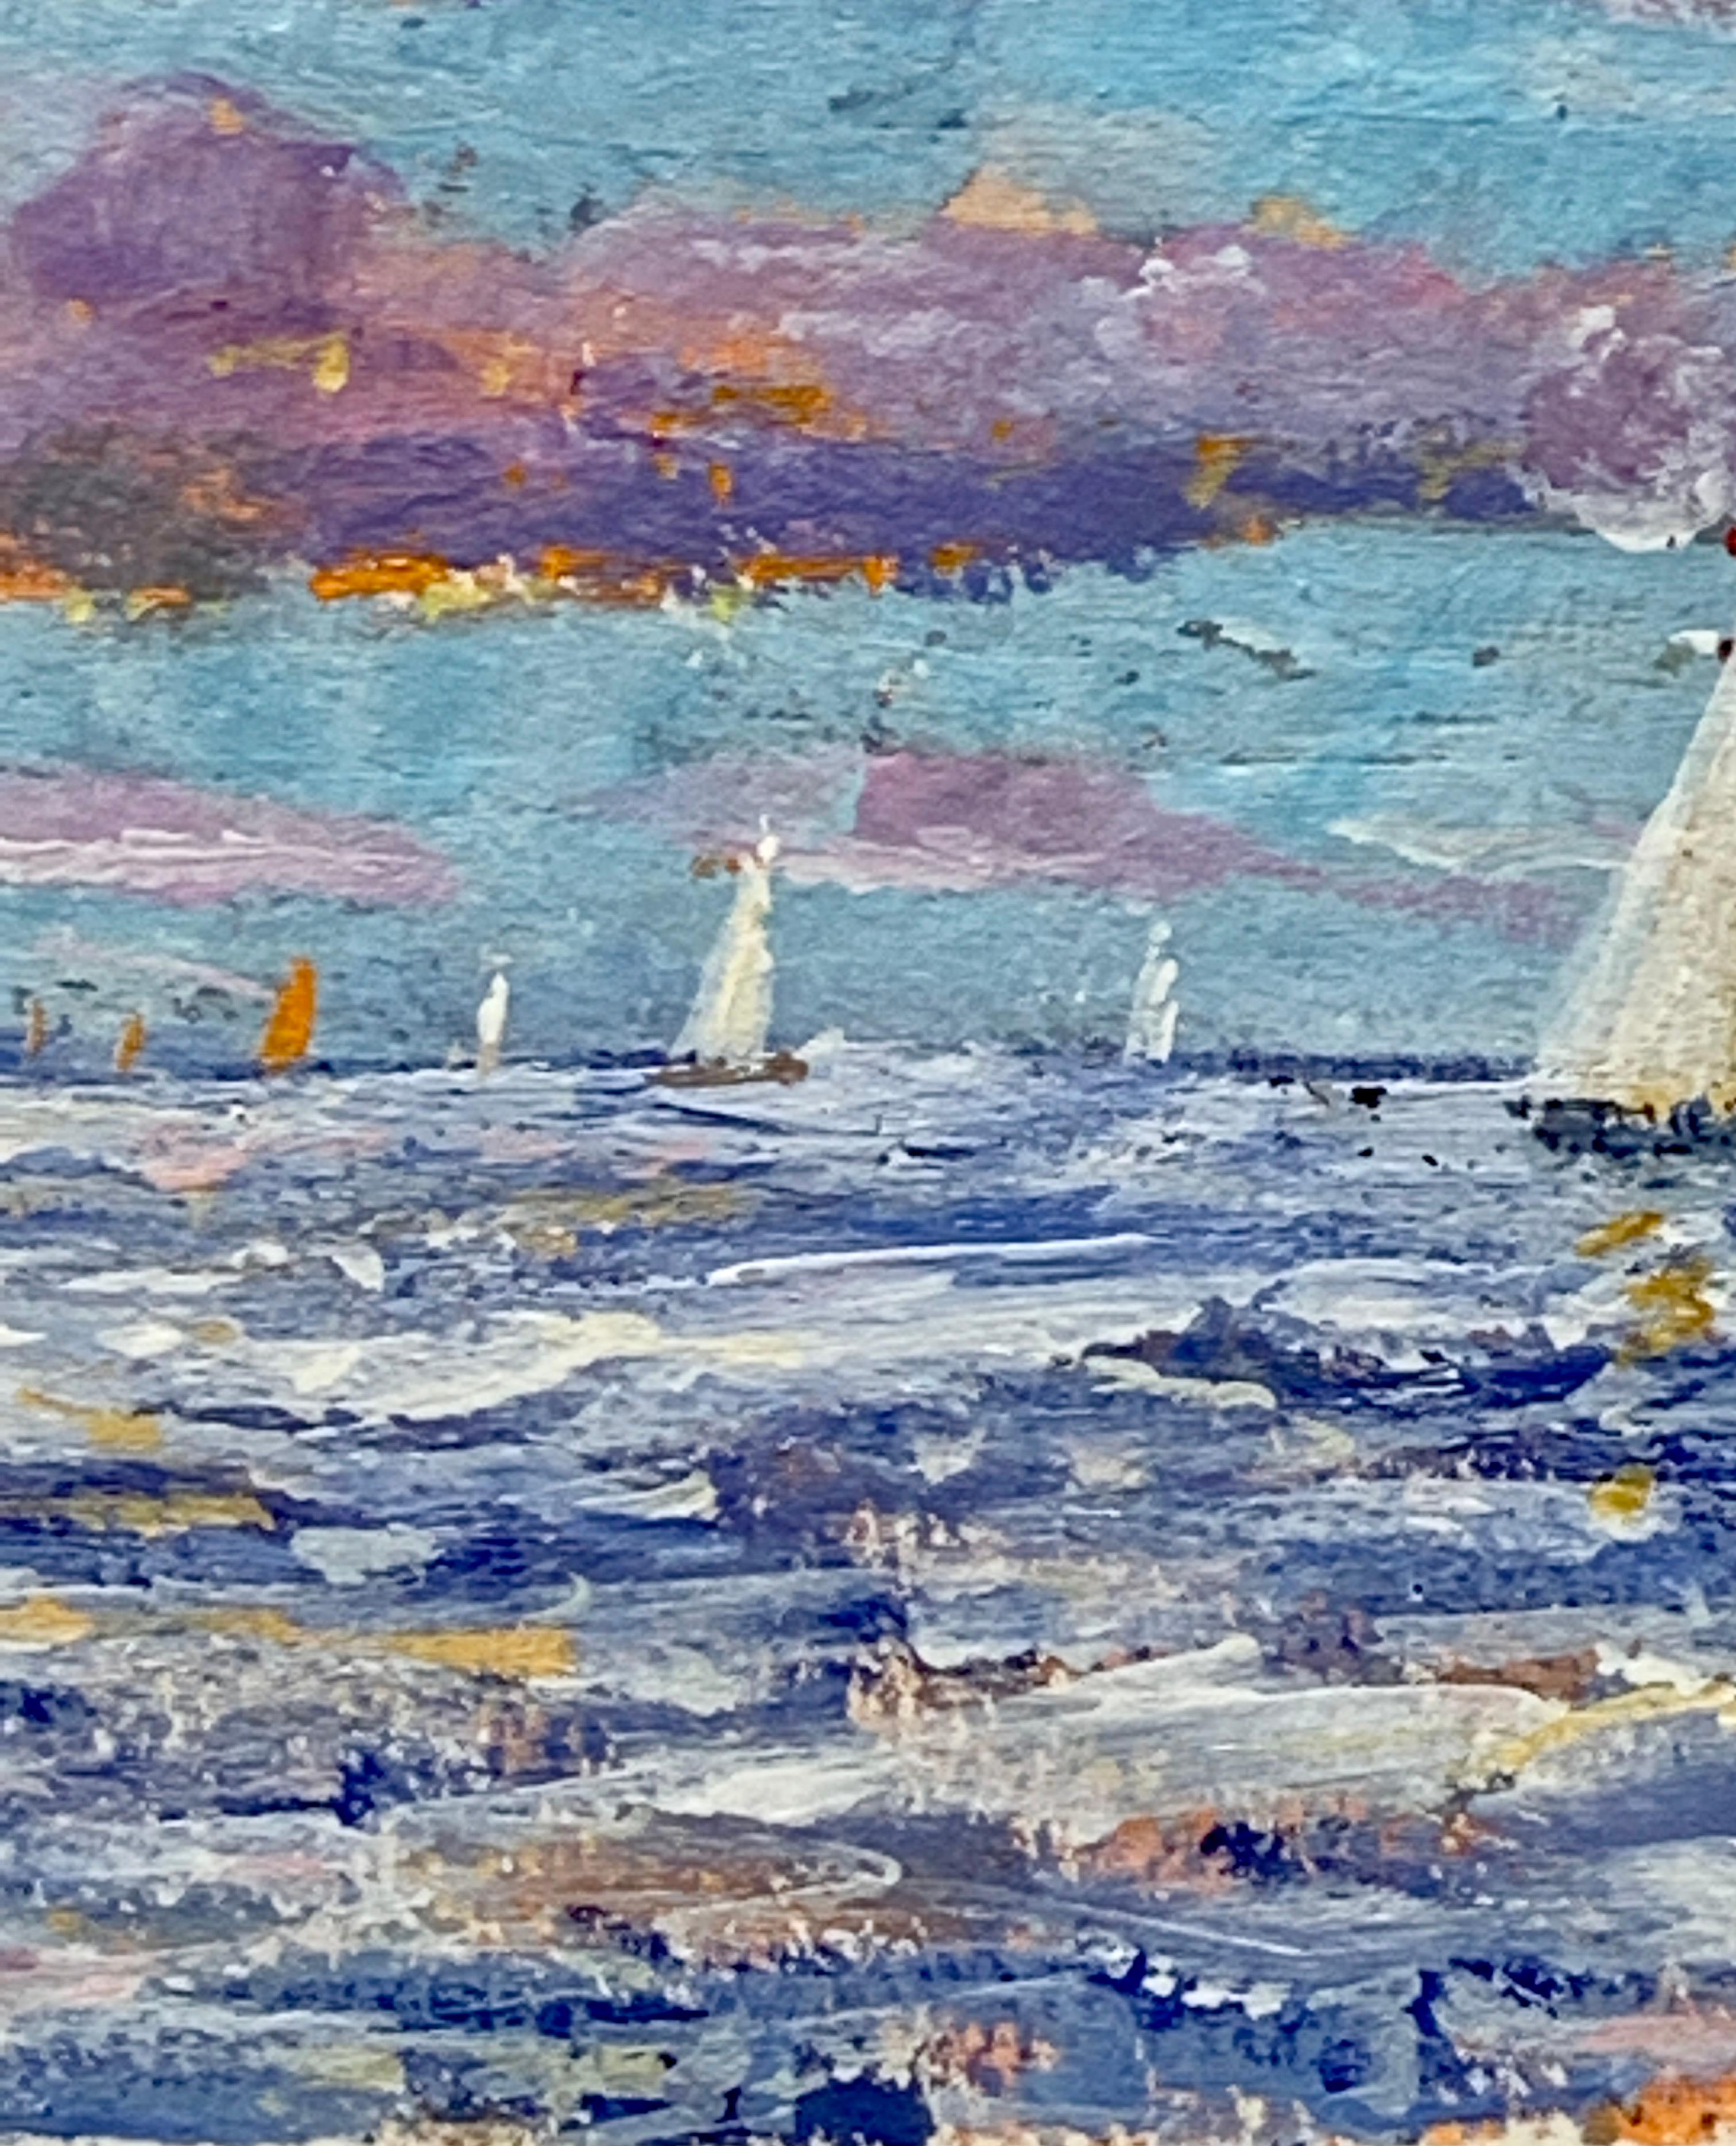 Scène impressionniste anglaise représentant une scène marine avec des yachts au large de la côte de Marin.

Charles Bertie Hall a peint des scènes dans toute l'Angleterre, l'Europe et l'Amérique, dans un style impressionniste traditionnel. Il a